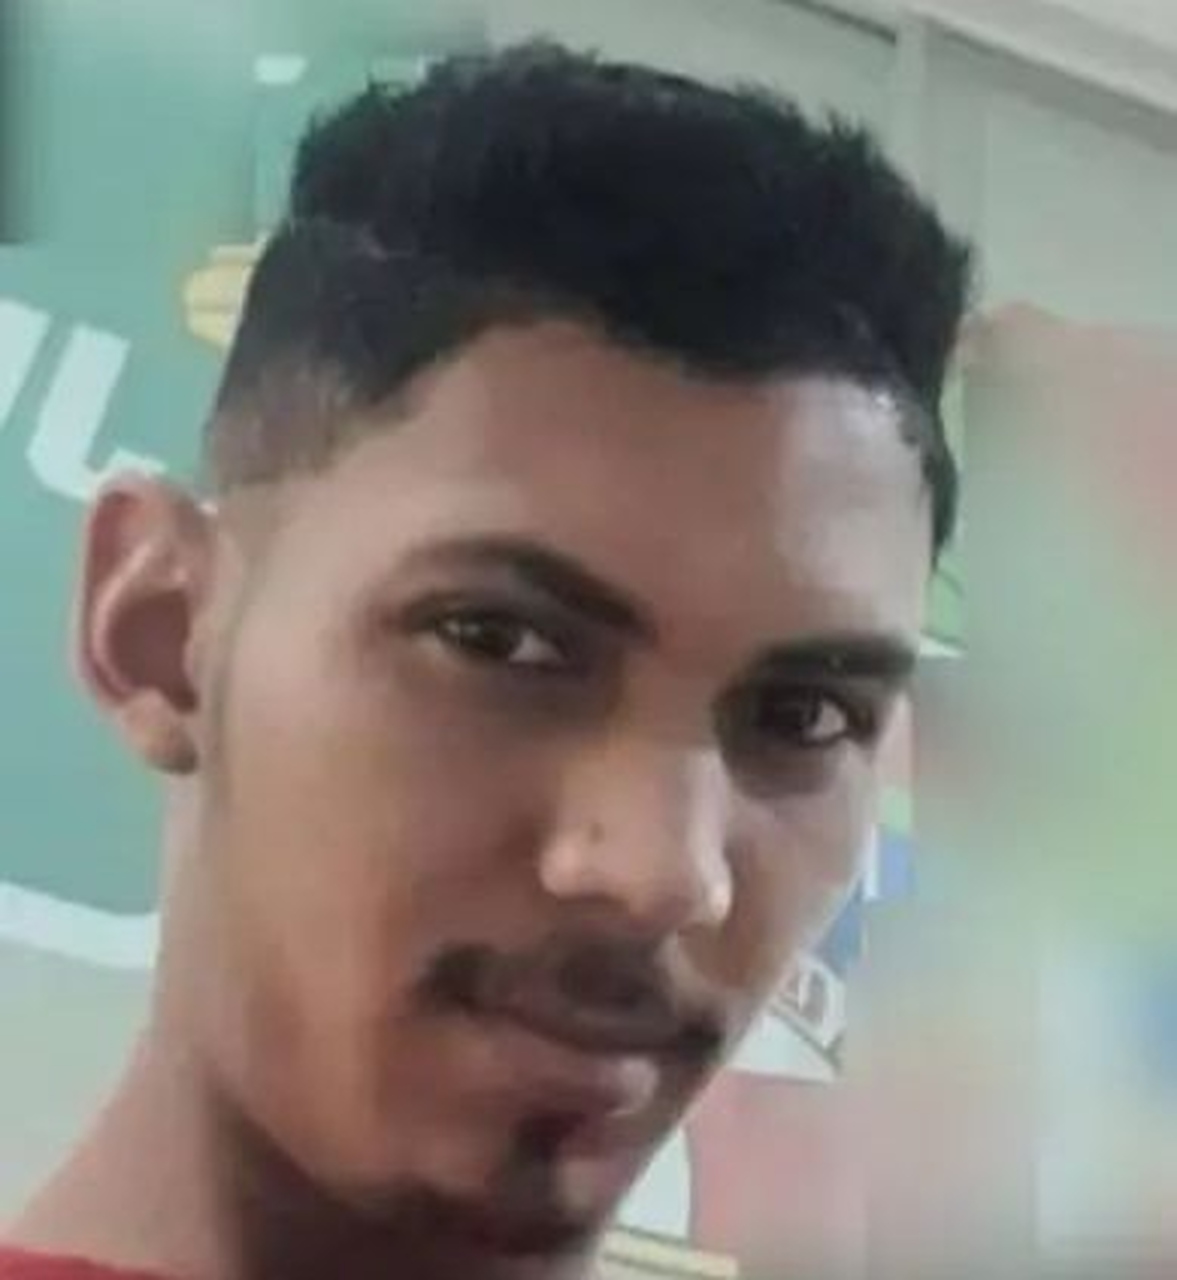 Corpo de jovem que estava desaparecido em Araguaína é encontrado boiando em lago